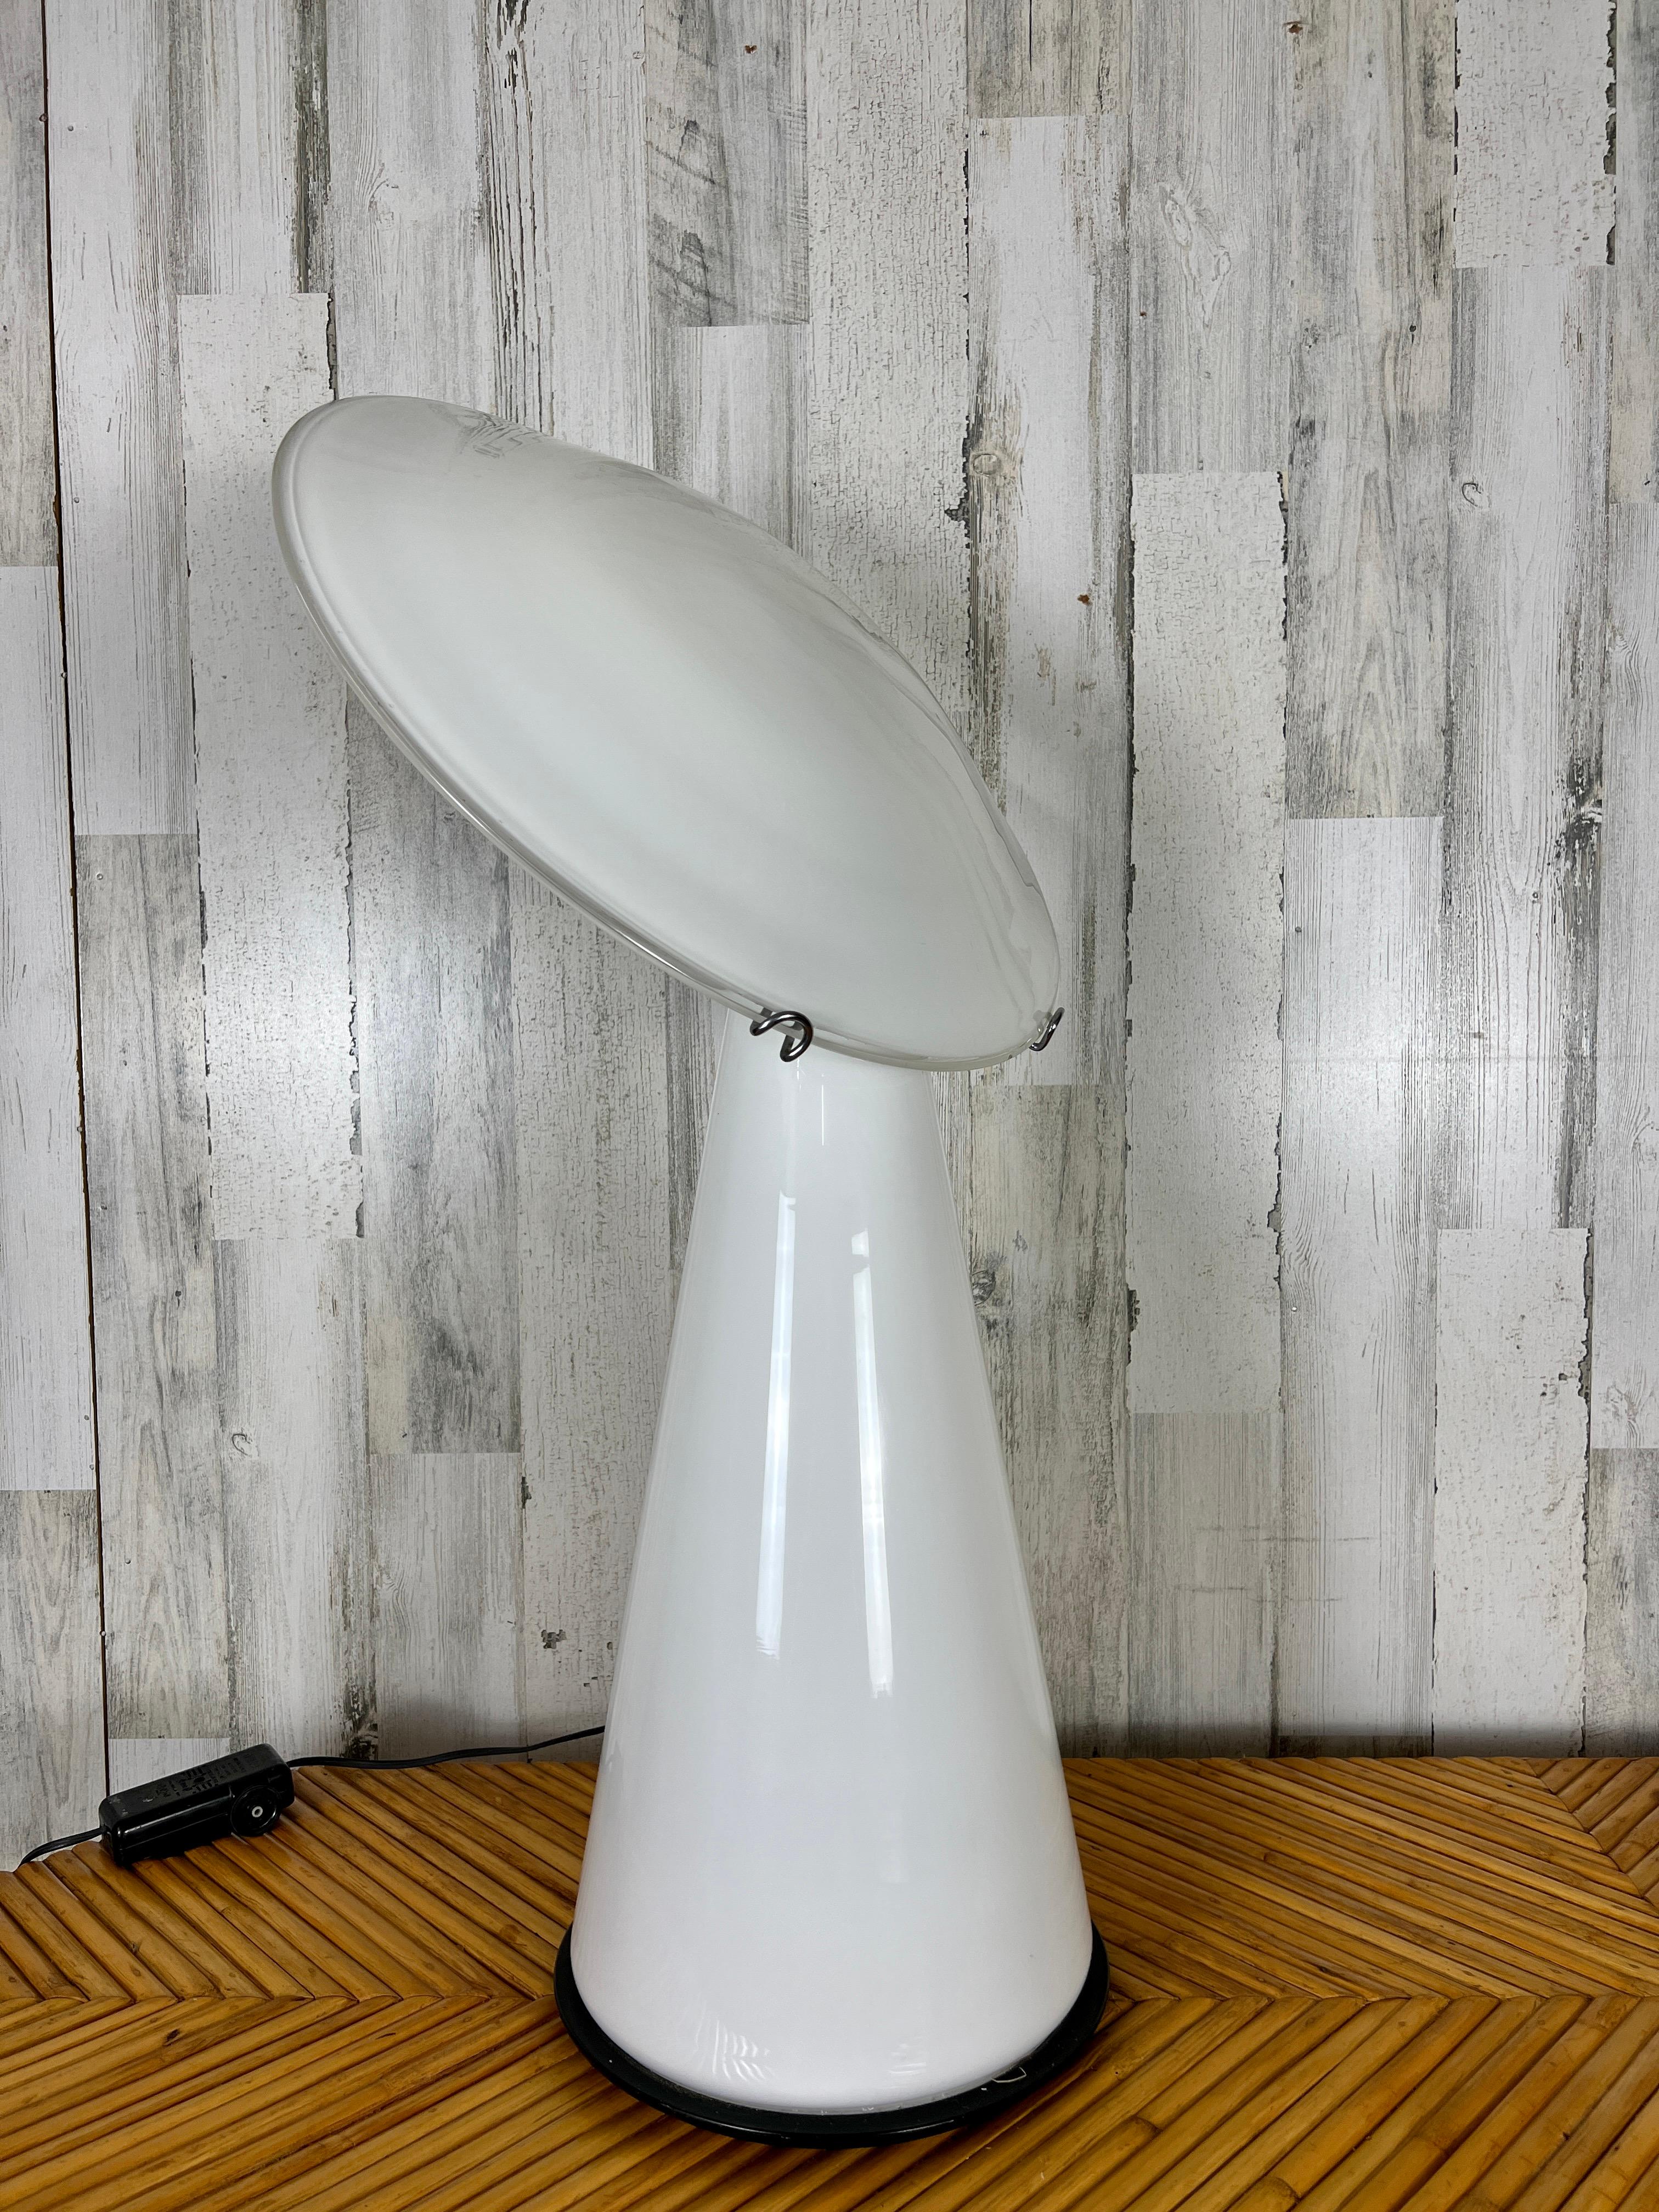 Lampe de table postmoderne Vistosi avec disque en verre incliné sur une base conique en verre.